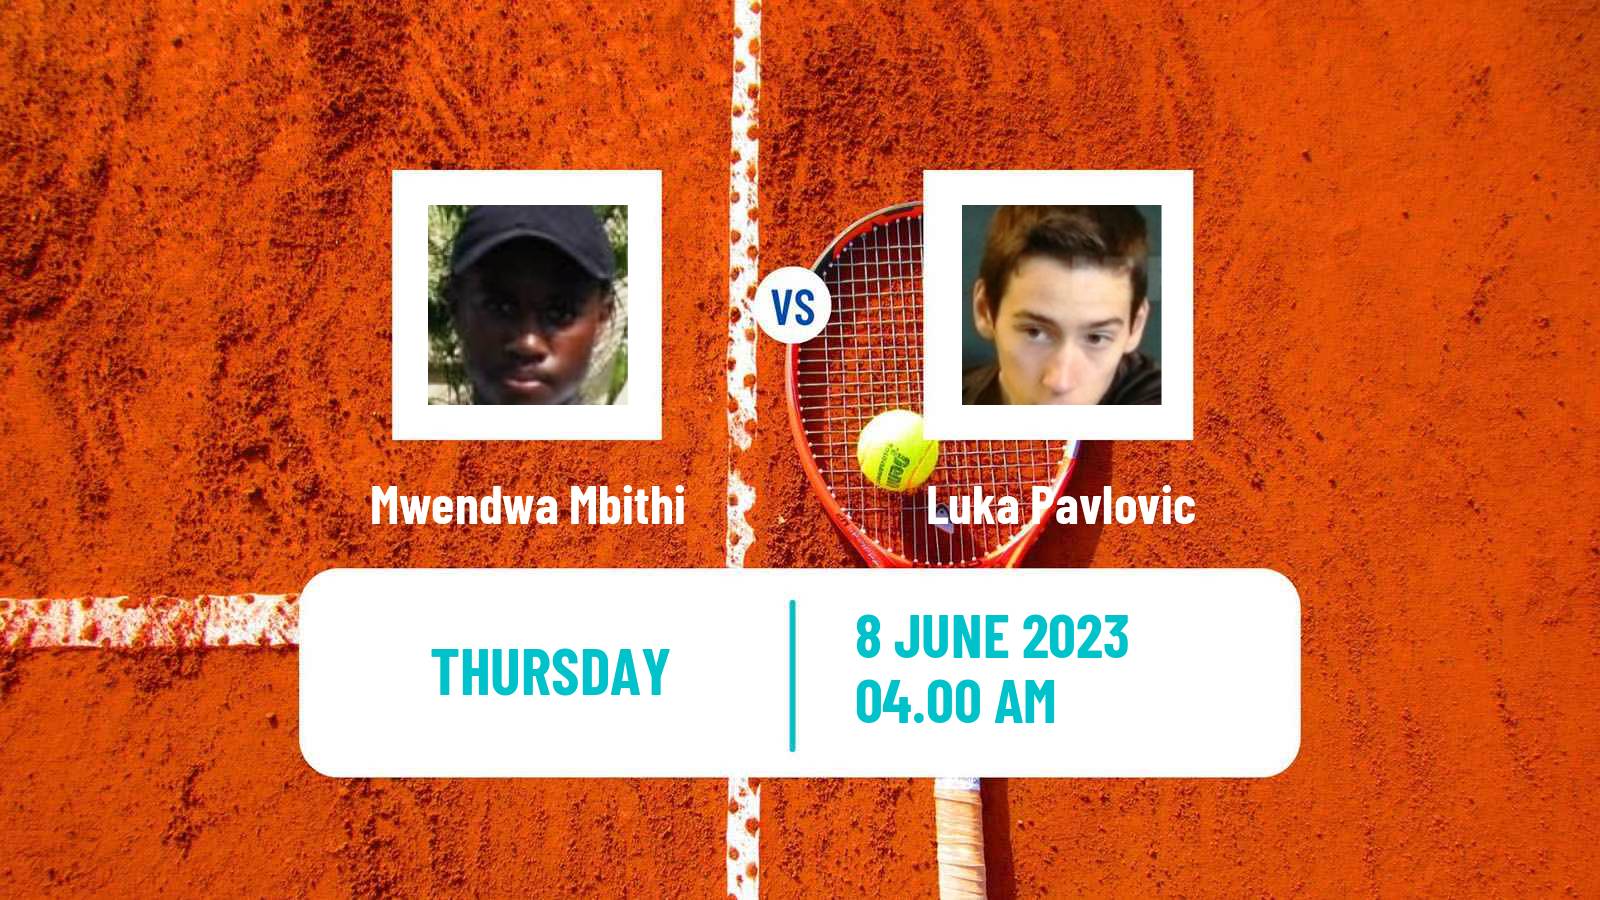 Tennis ITF M25 Kursumlijska Banja 3 Men Mwendwa Mbithi - Luka Pavlovic